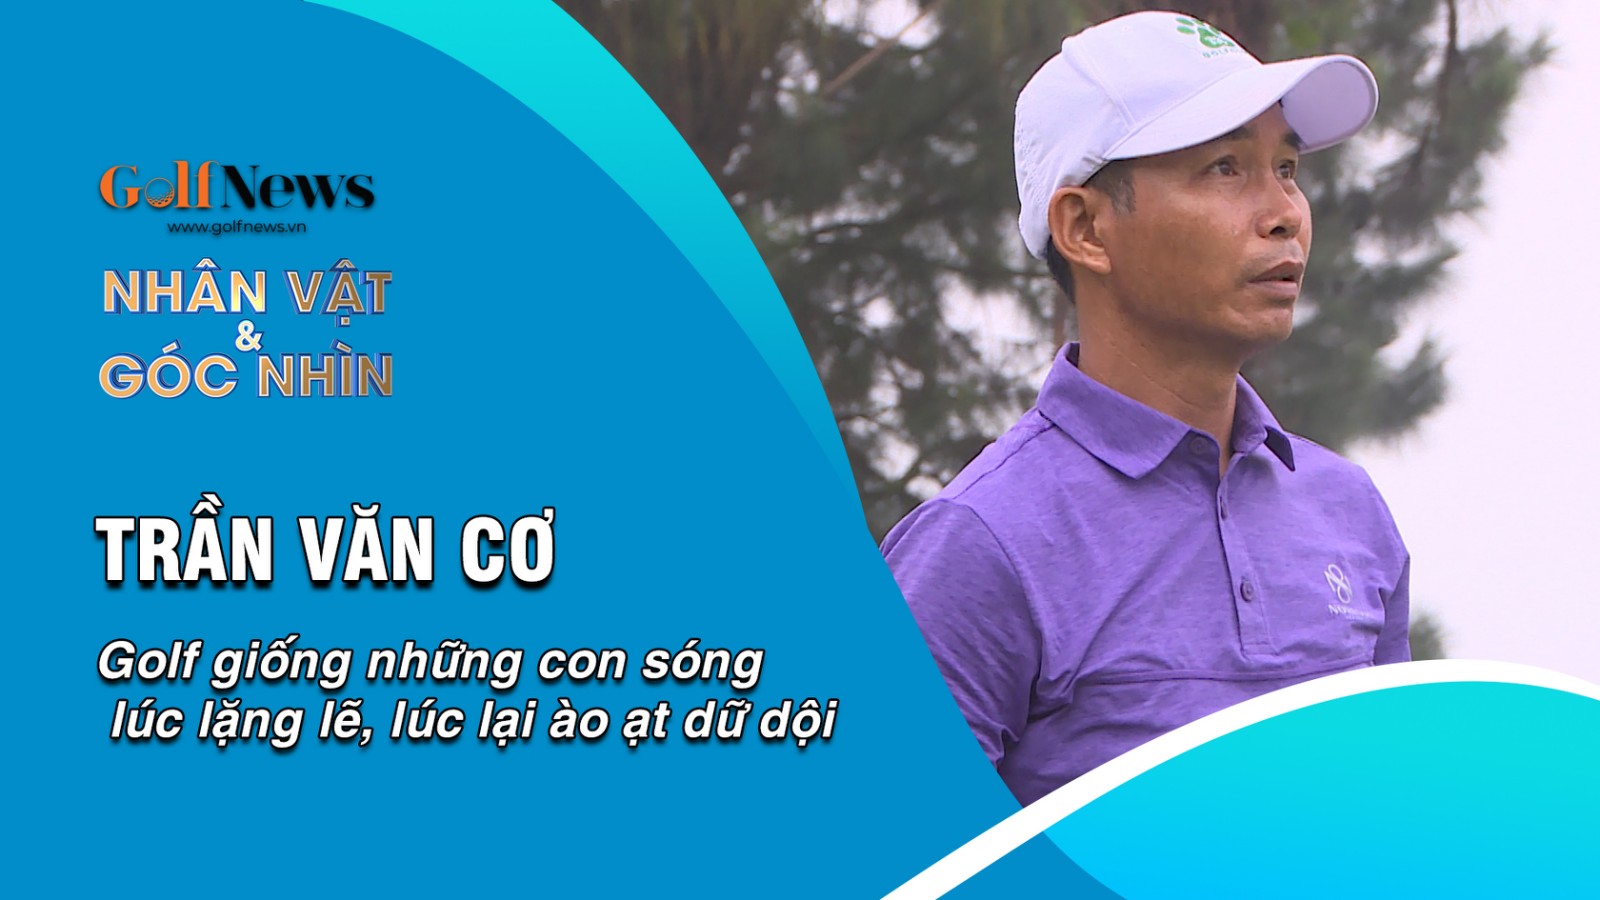 Golfer Trần Văn Cơ: "Golf giống những con sóng lúc lặng lẽ, lúc lại ào ạt dữ dội"